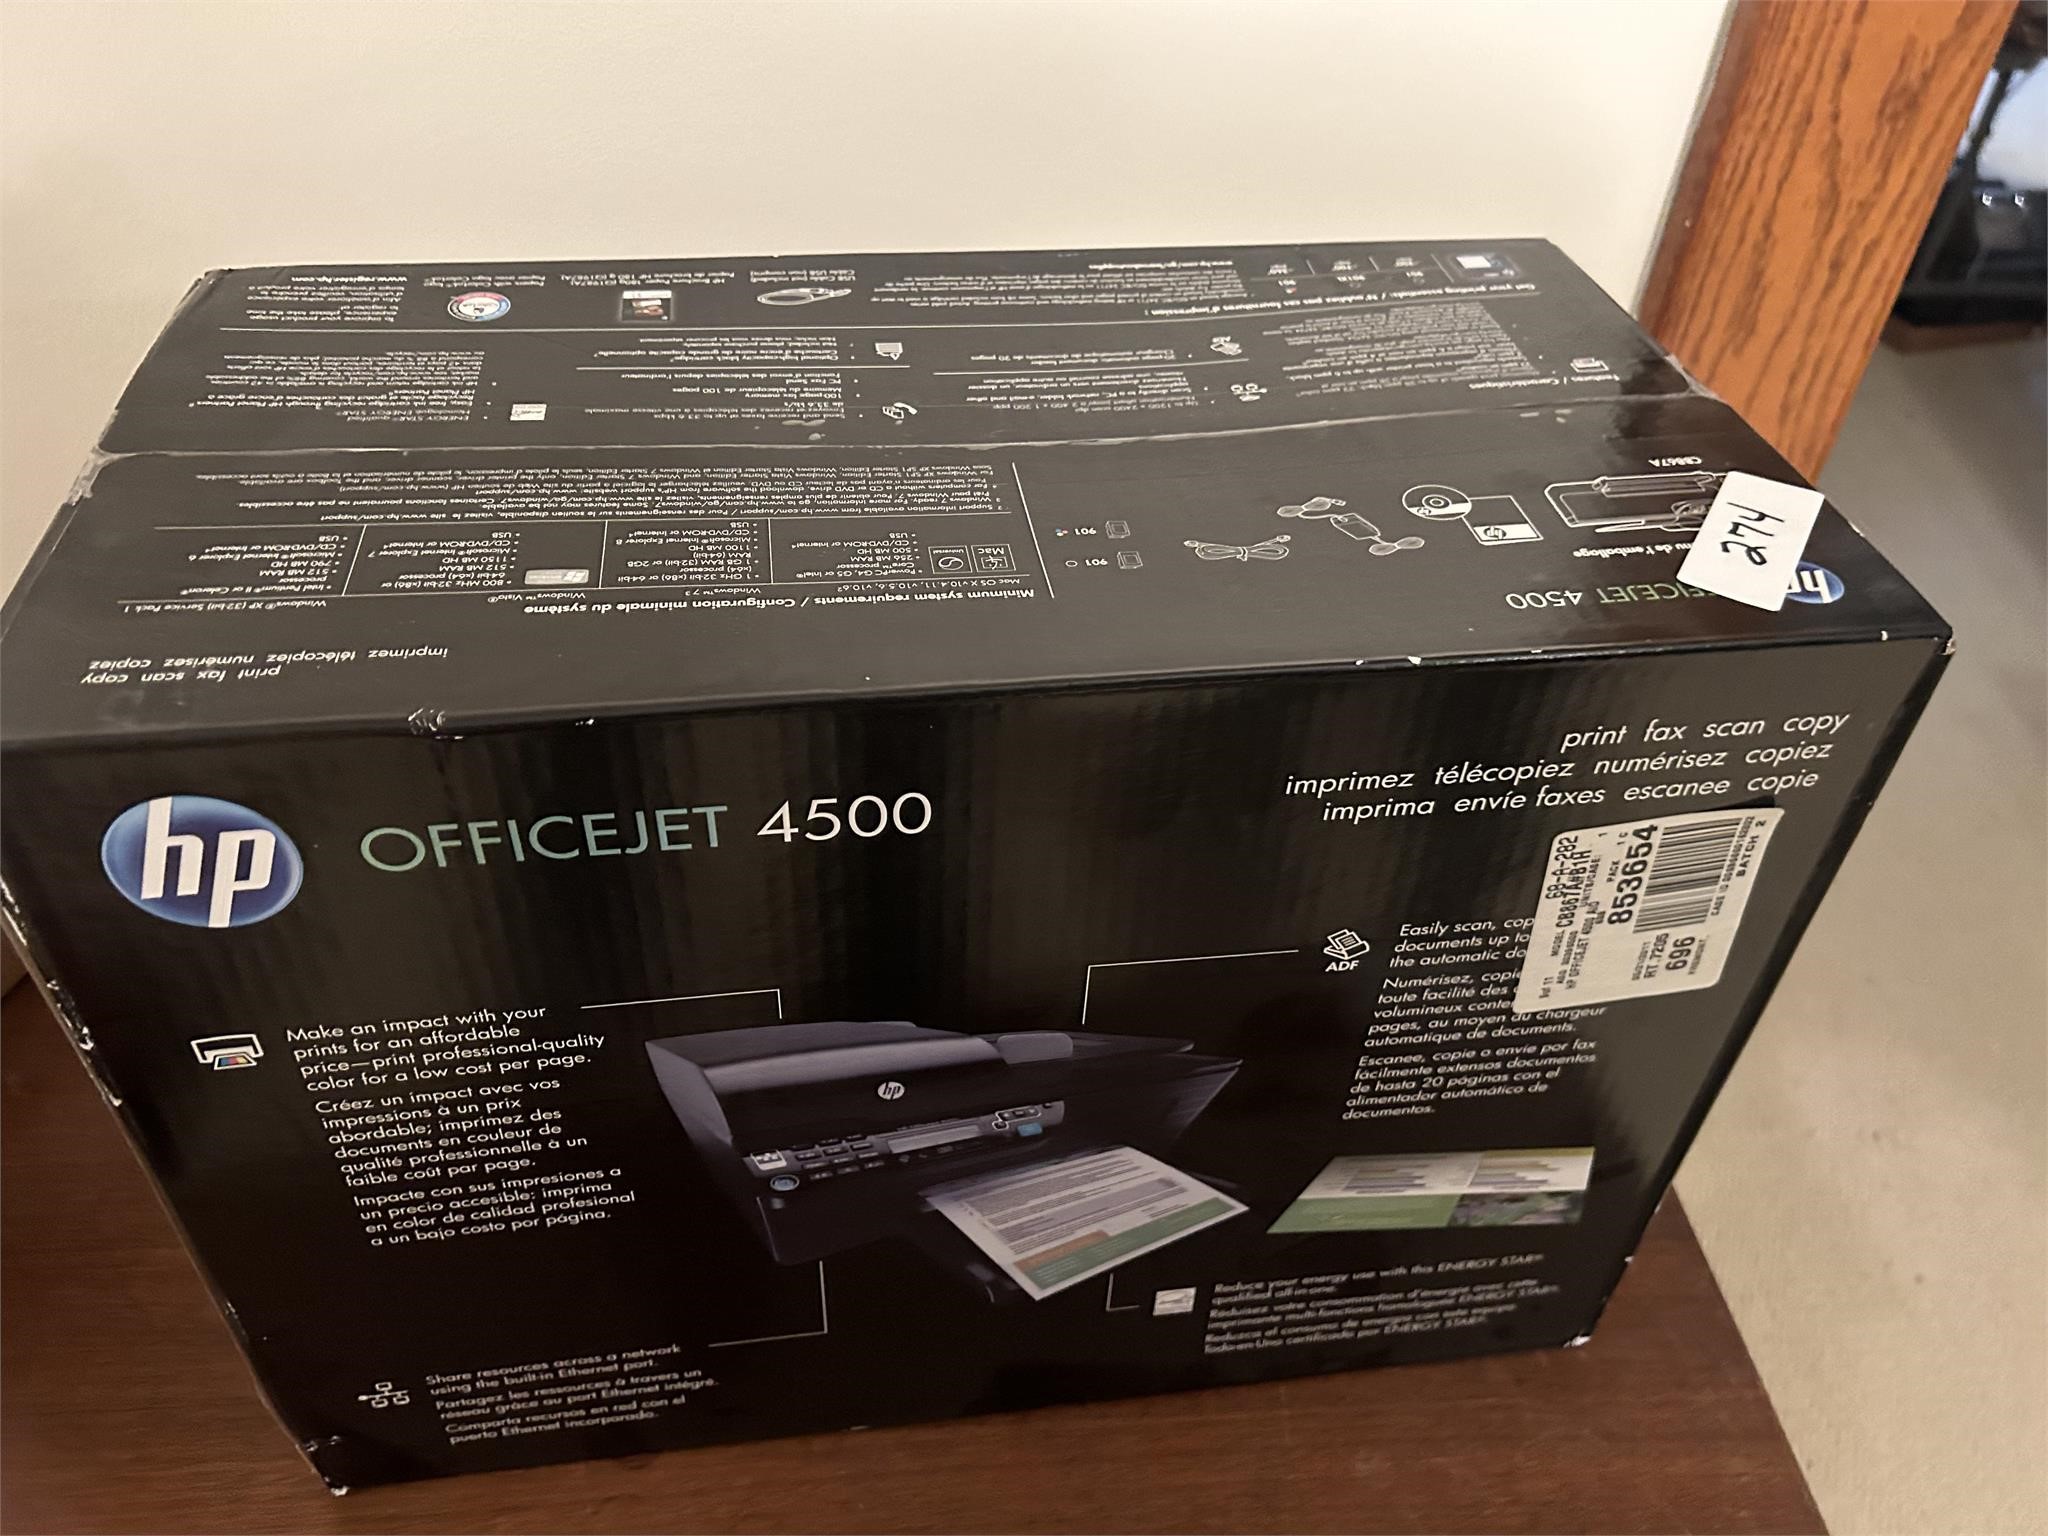 OfficeJet 4500 Printer New in box